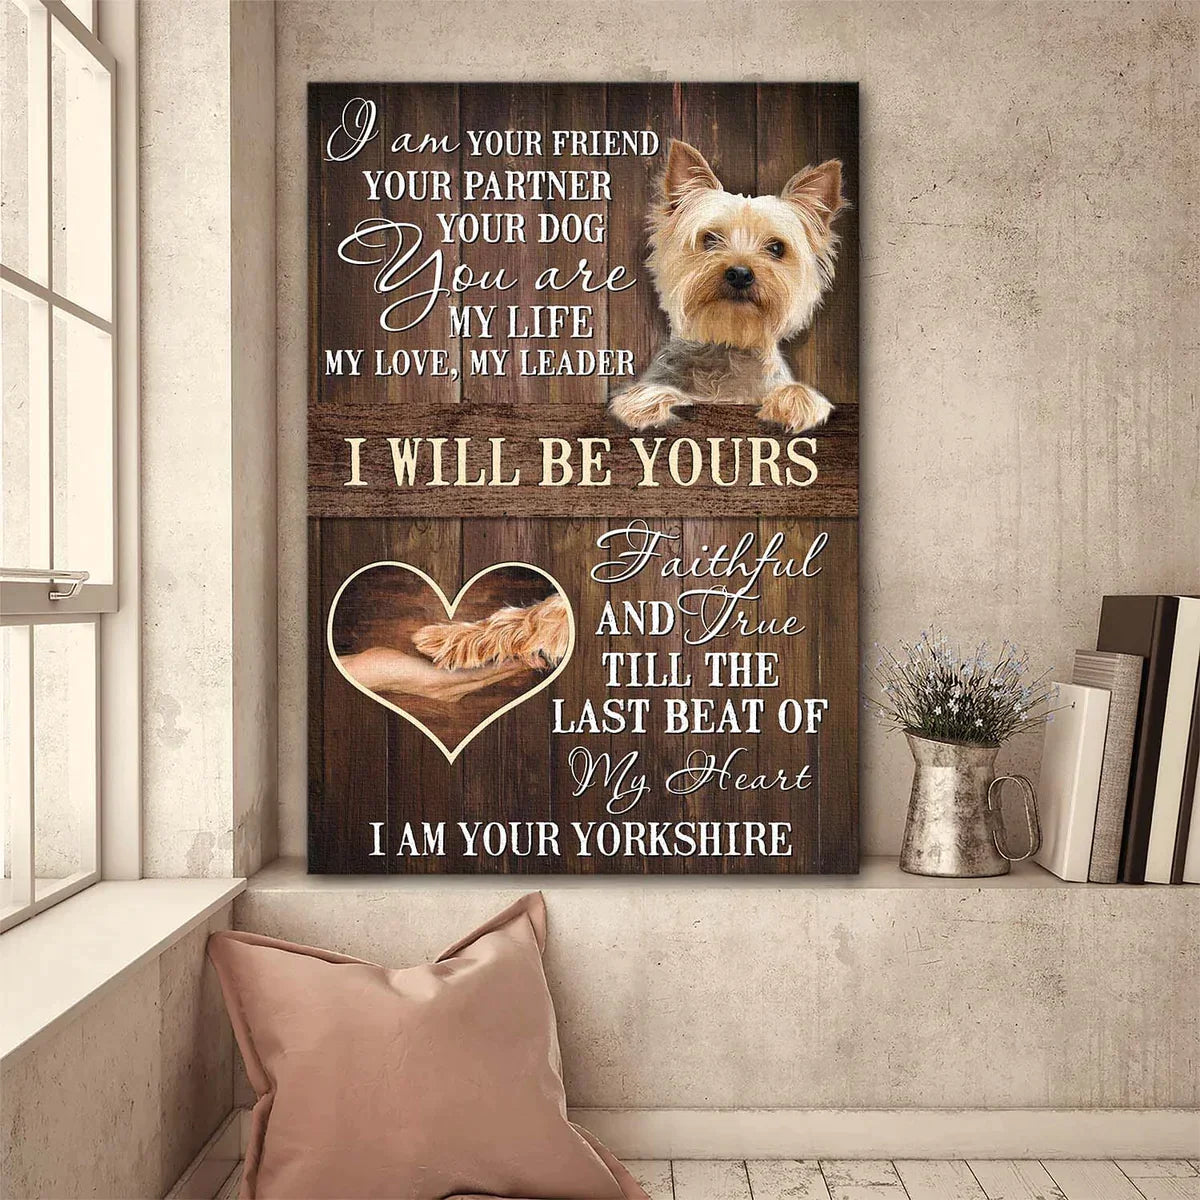 Yorkshire Terrier Dog Portrait Canvas - Yorkshire Terrier, Dog Picture - I Will Be Yours Dog Canvas - Gift for Yorkshire Terrier, Dog Lovers, Friends, Family - Amzanimalsgift